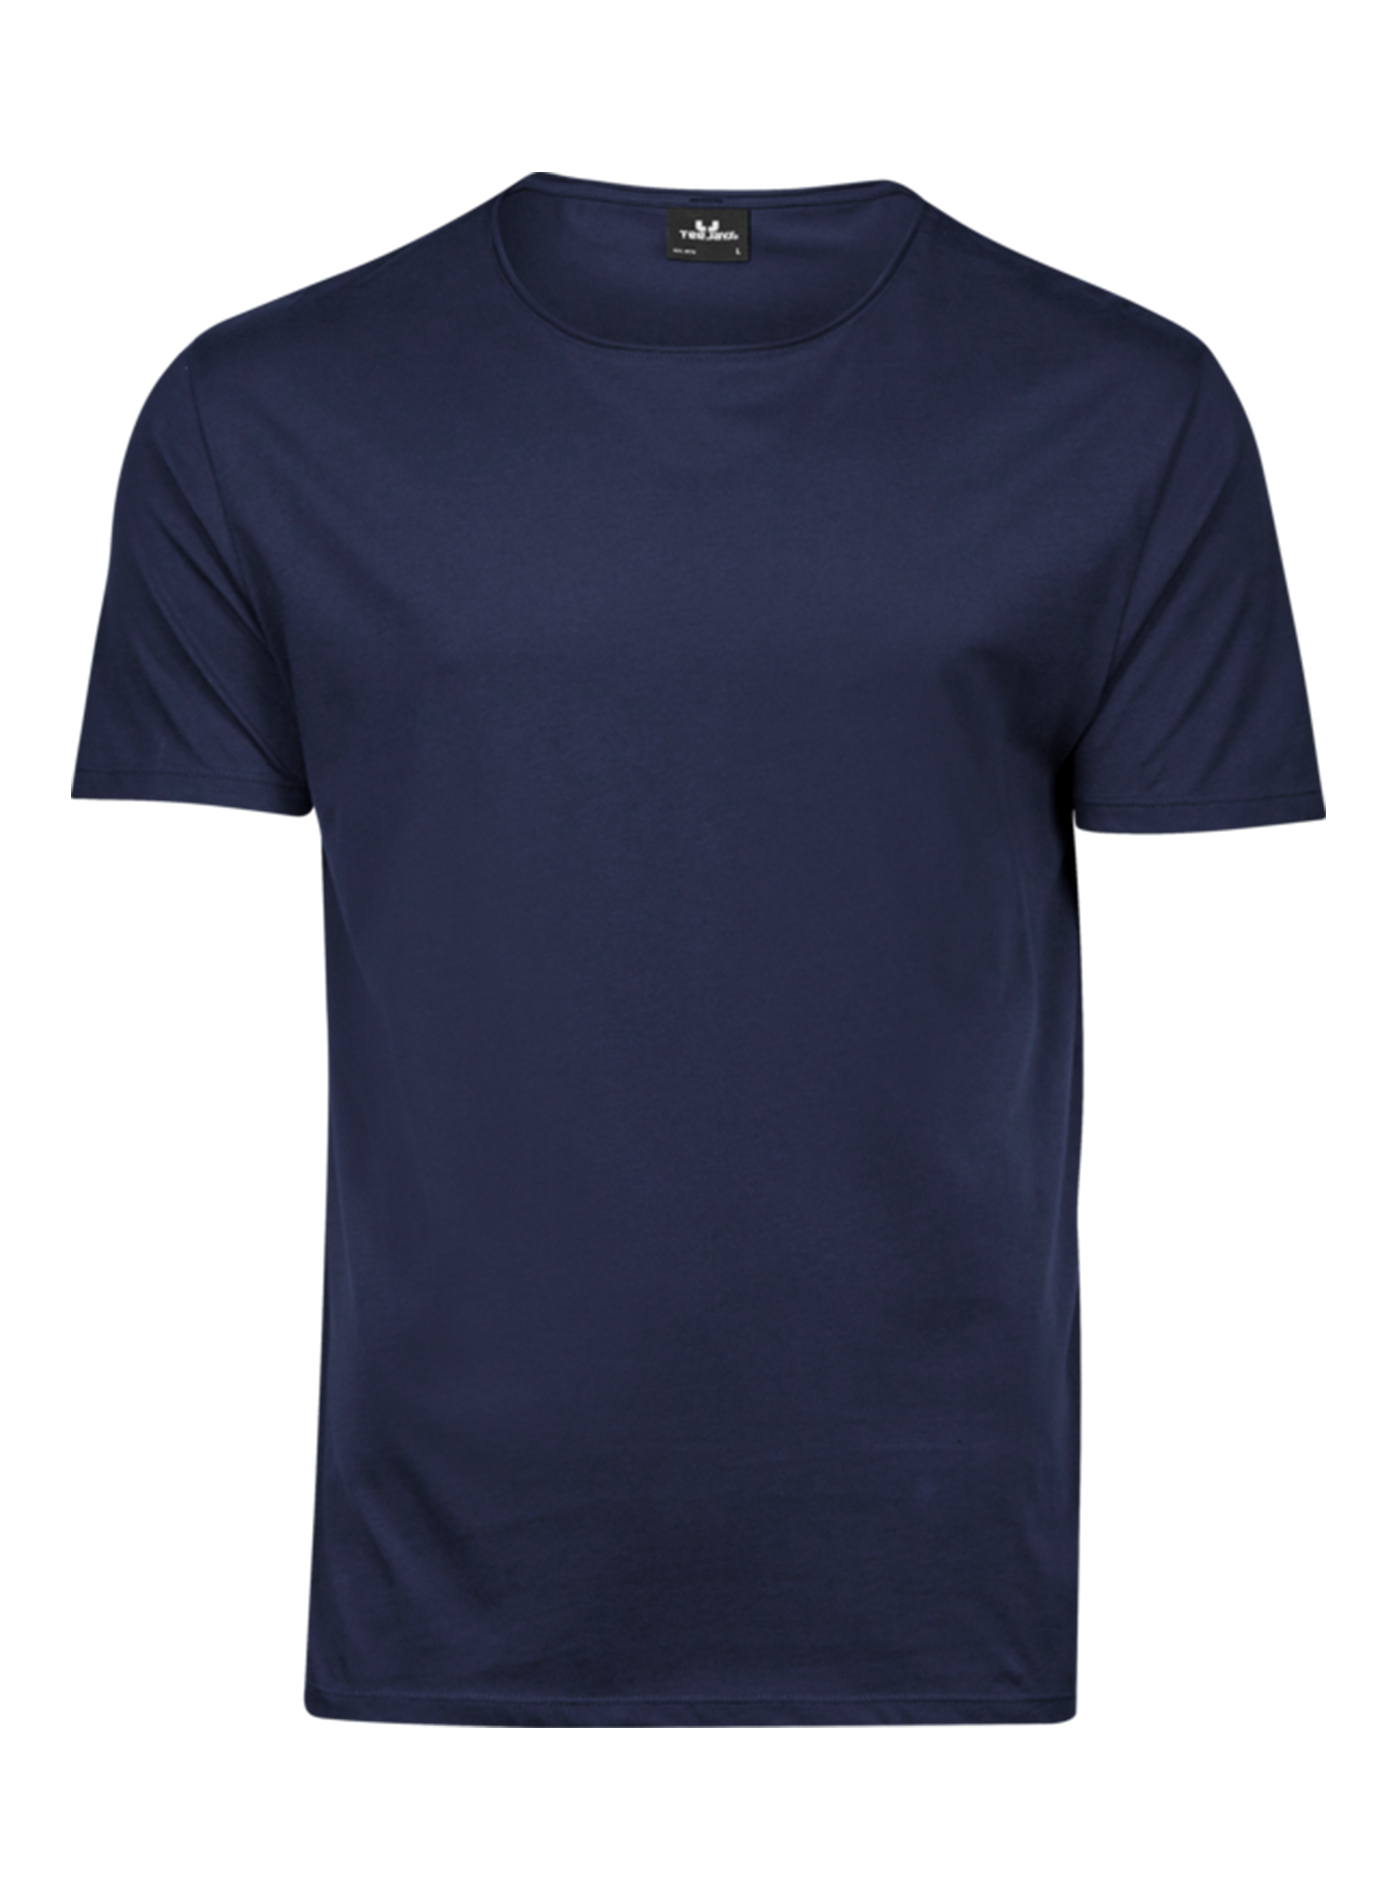 Pánské tričko Raw Tee Jays - Námořní modrá L